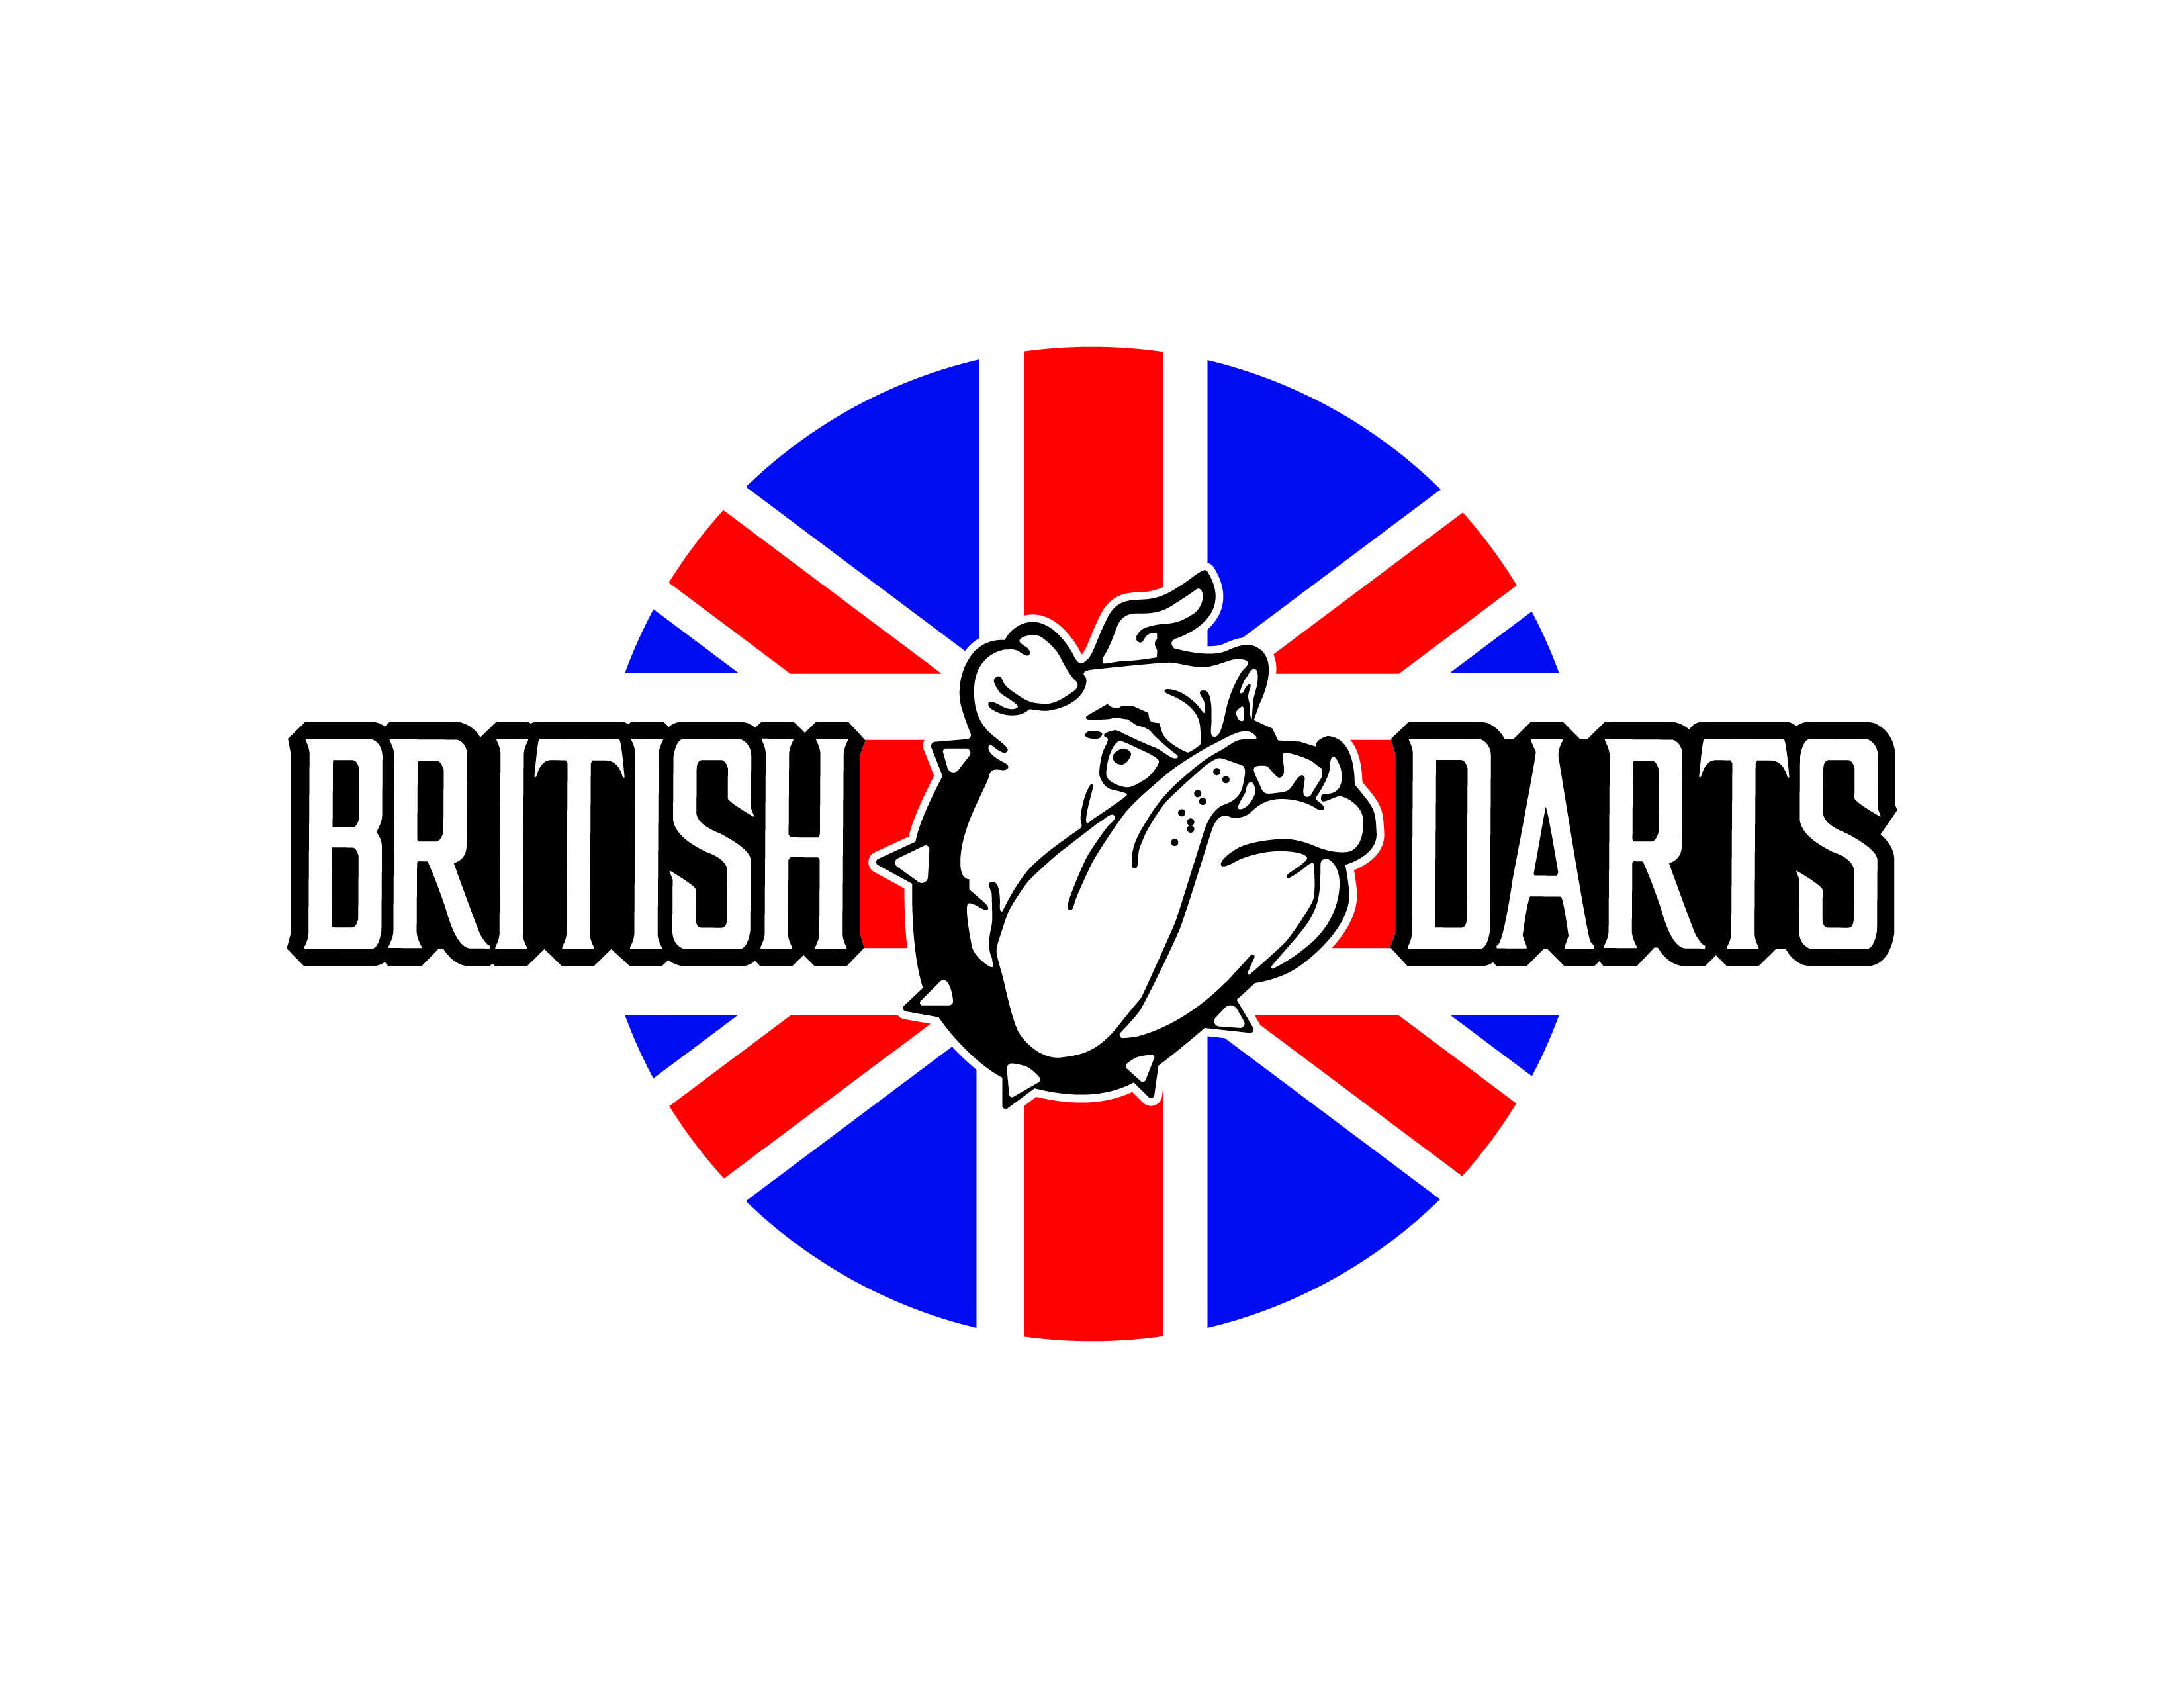 British Darts